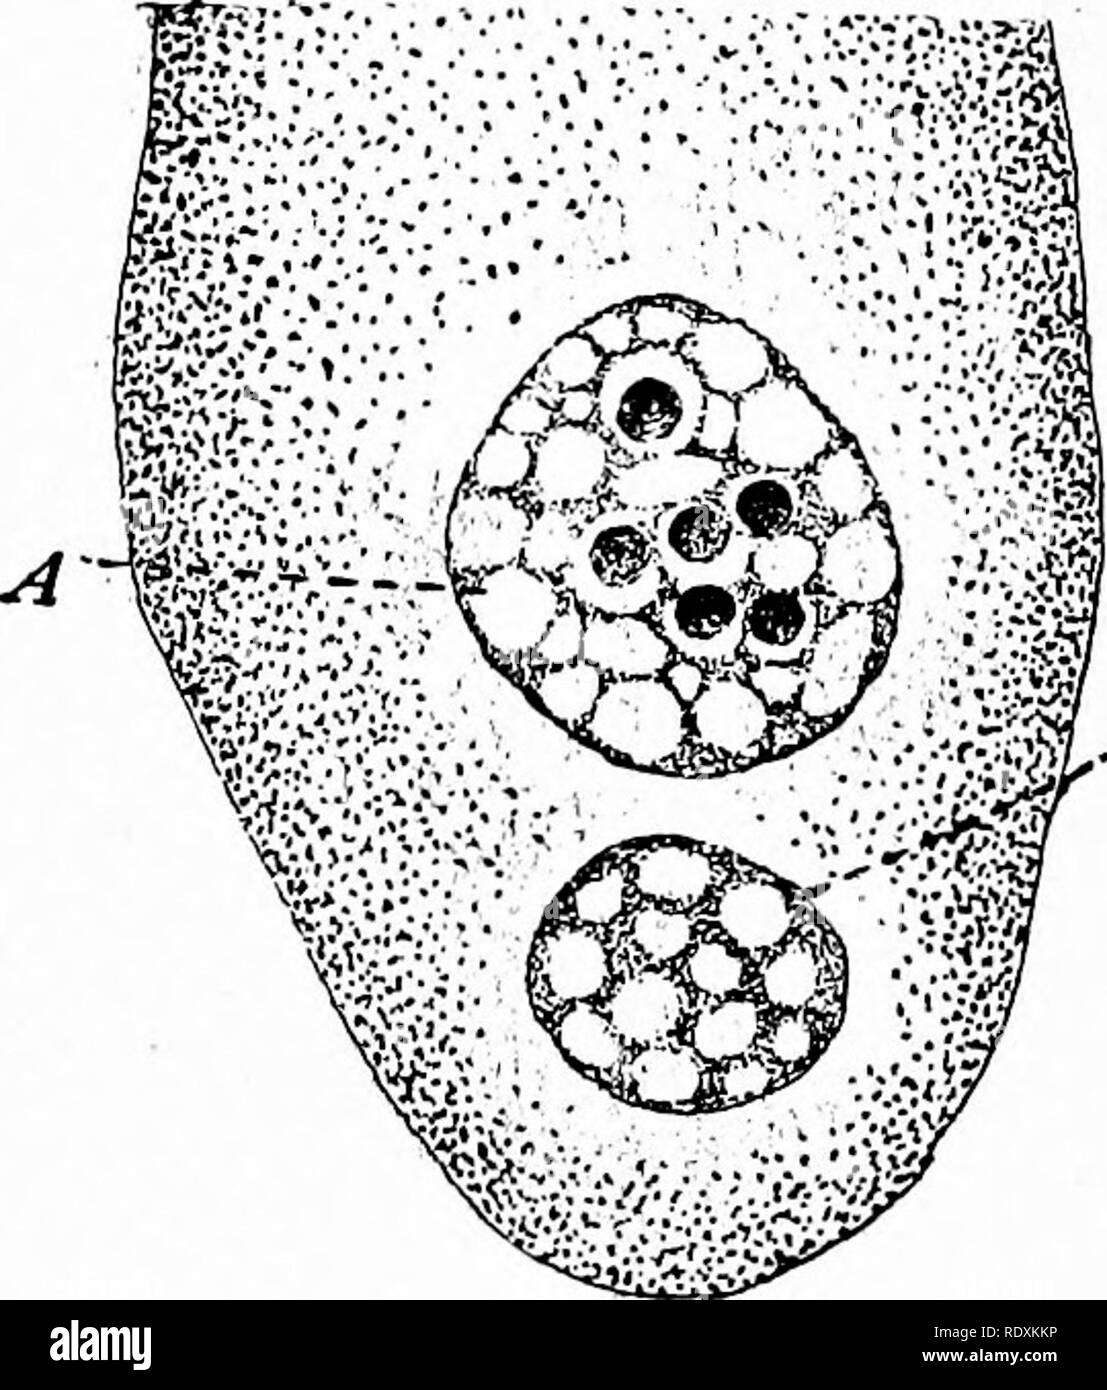 . Protozoo?. Protozoen; Protozoen, Pathogenen. 302 DIE PATHOGENEN BHIZOPODA allogromia im Sinne von Rhumbler des Organismus von den Namen, sondern, dass es sich um eine Spezies von einer noch markanteren intrazelluläre rhizopod zuerst durch Dangeard 1895 beschrieben, die unter dem Namen Nudeophaga amebce und anschließend identifiziert von Gruber, Pfenard und Doflein. Es ist eine recht häufige Parasiten der Amöben Proteus und ähnliche Süßwasser-Formen, dringt der Atomkerne und der Bildung von relativ großen kugelförmigen reproduktiven Organe innerhalb der Kernmembran (siehe Abb. 117). Der Kern wird mehr und mehr Hypertrophisierten Stockfoto